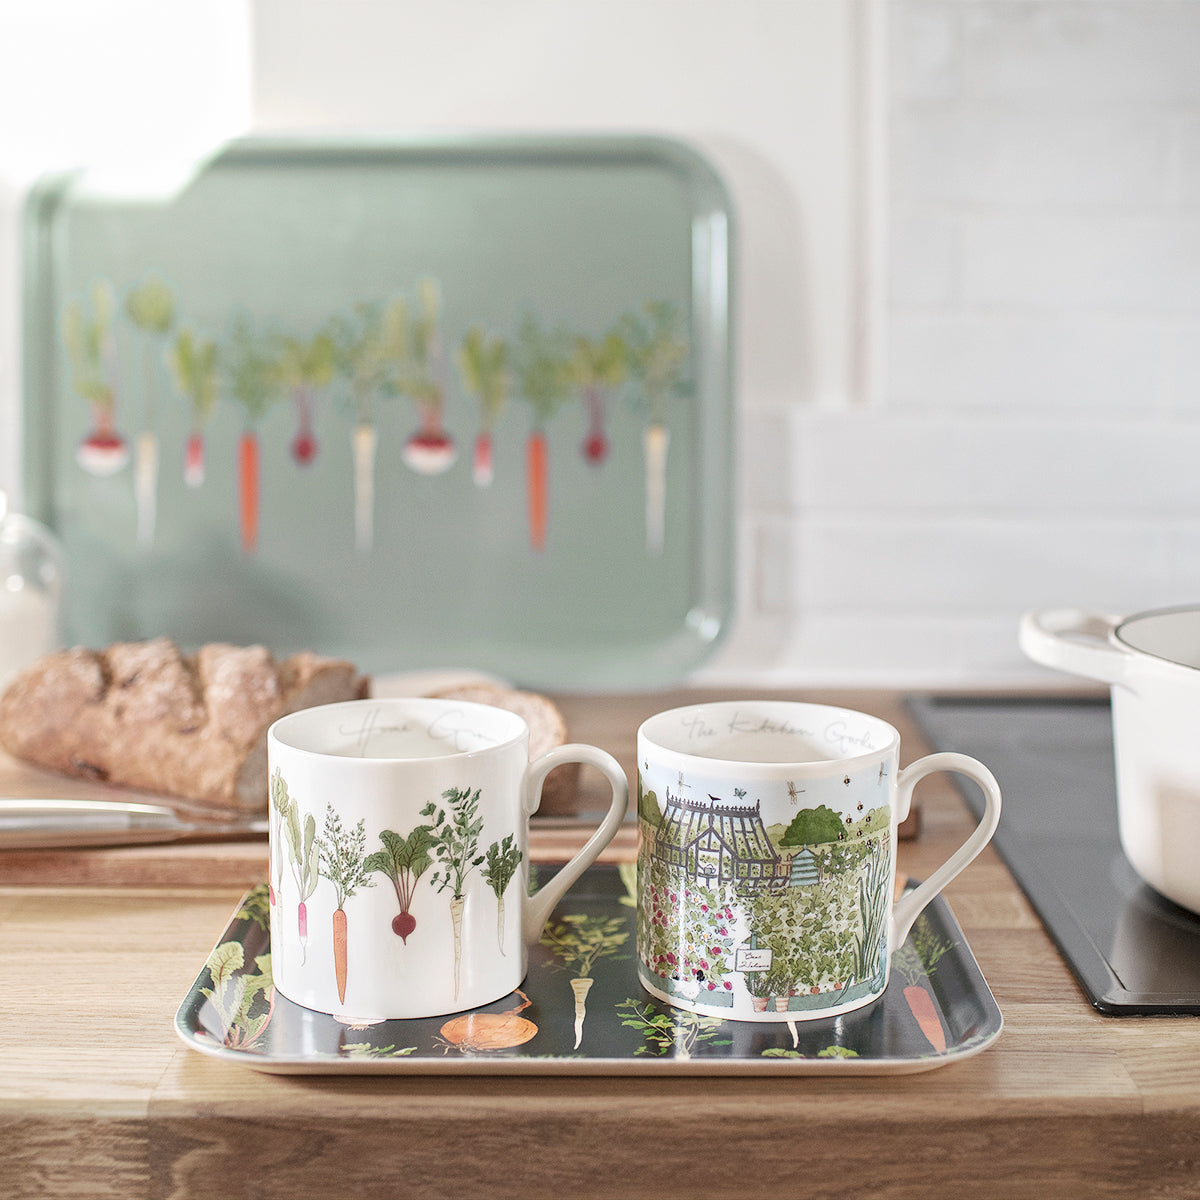 The Kitchen Garden Mug and Home Grown Mug on a small printed tray